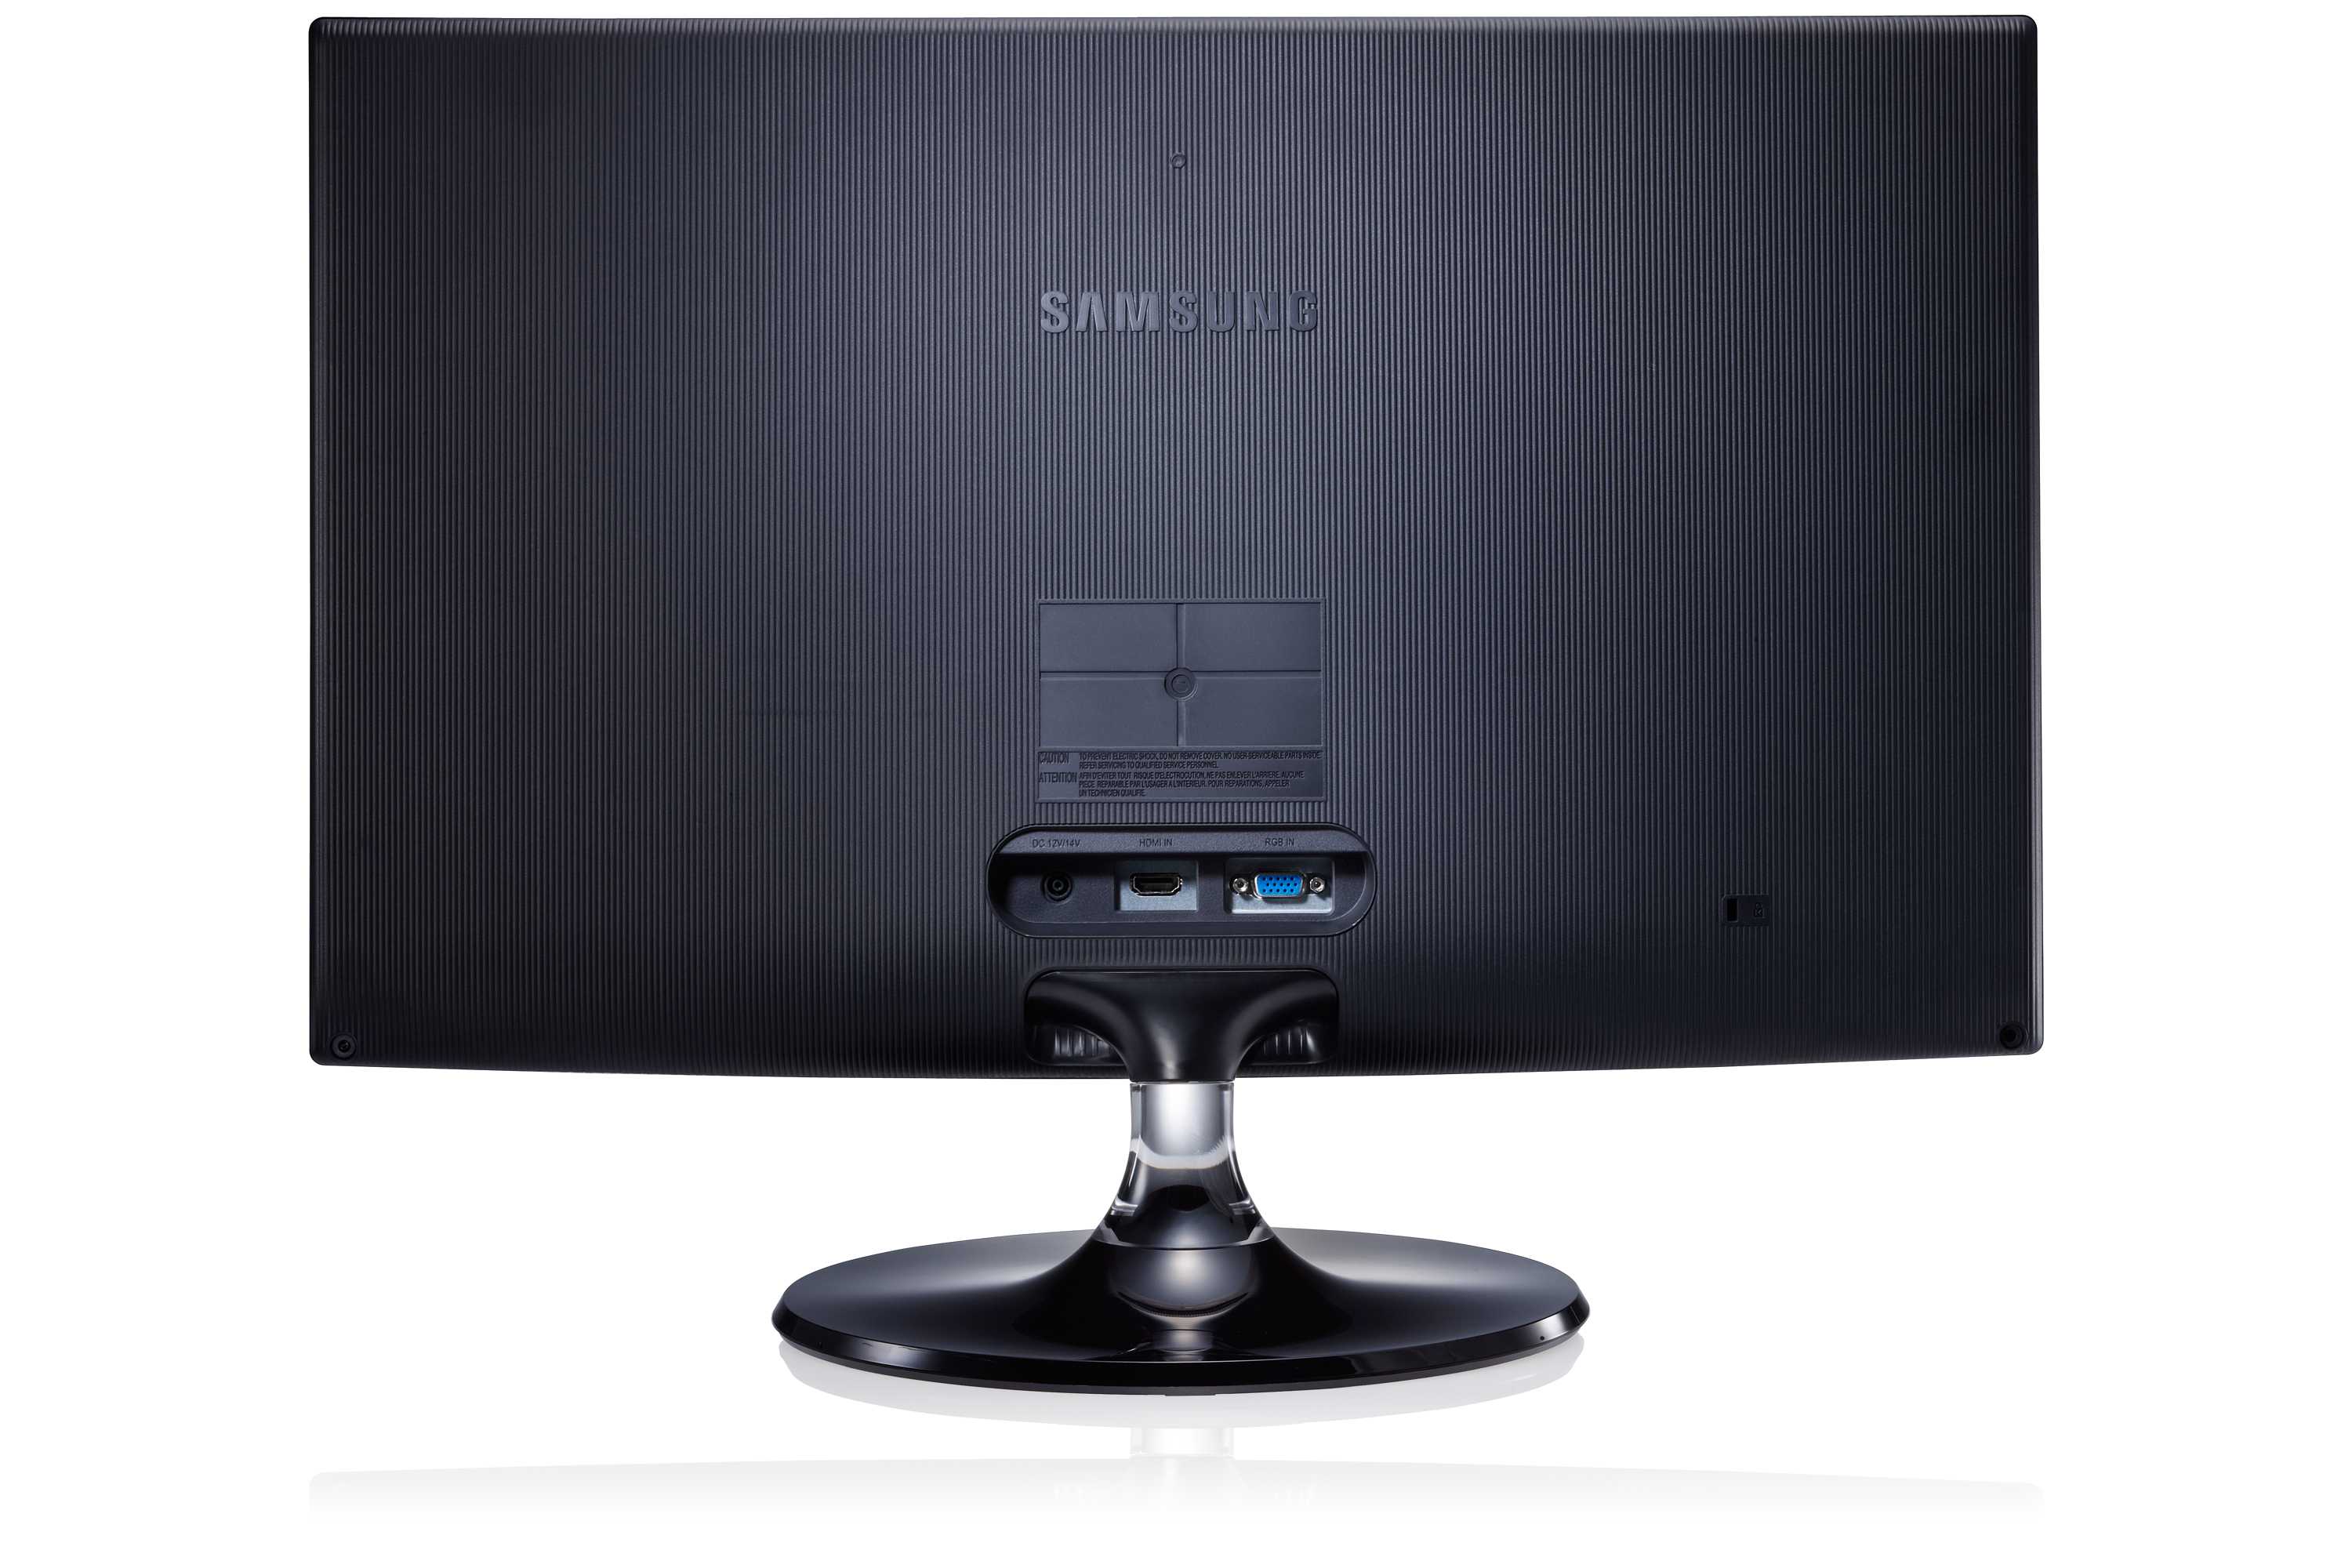 Samsung s22b350t (черный/красный) - купить , скидки, цена, отзывы, обзор, характеристики - мониторы